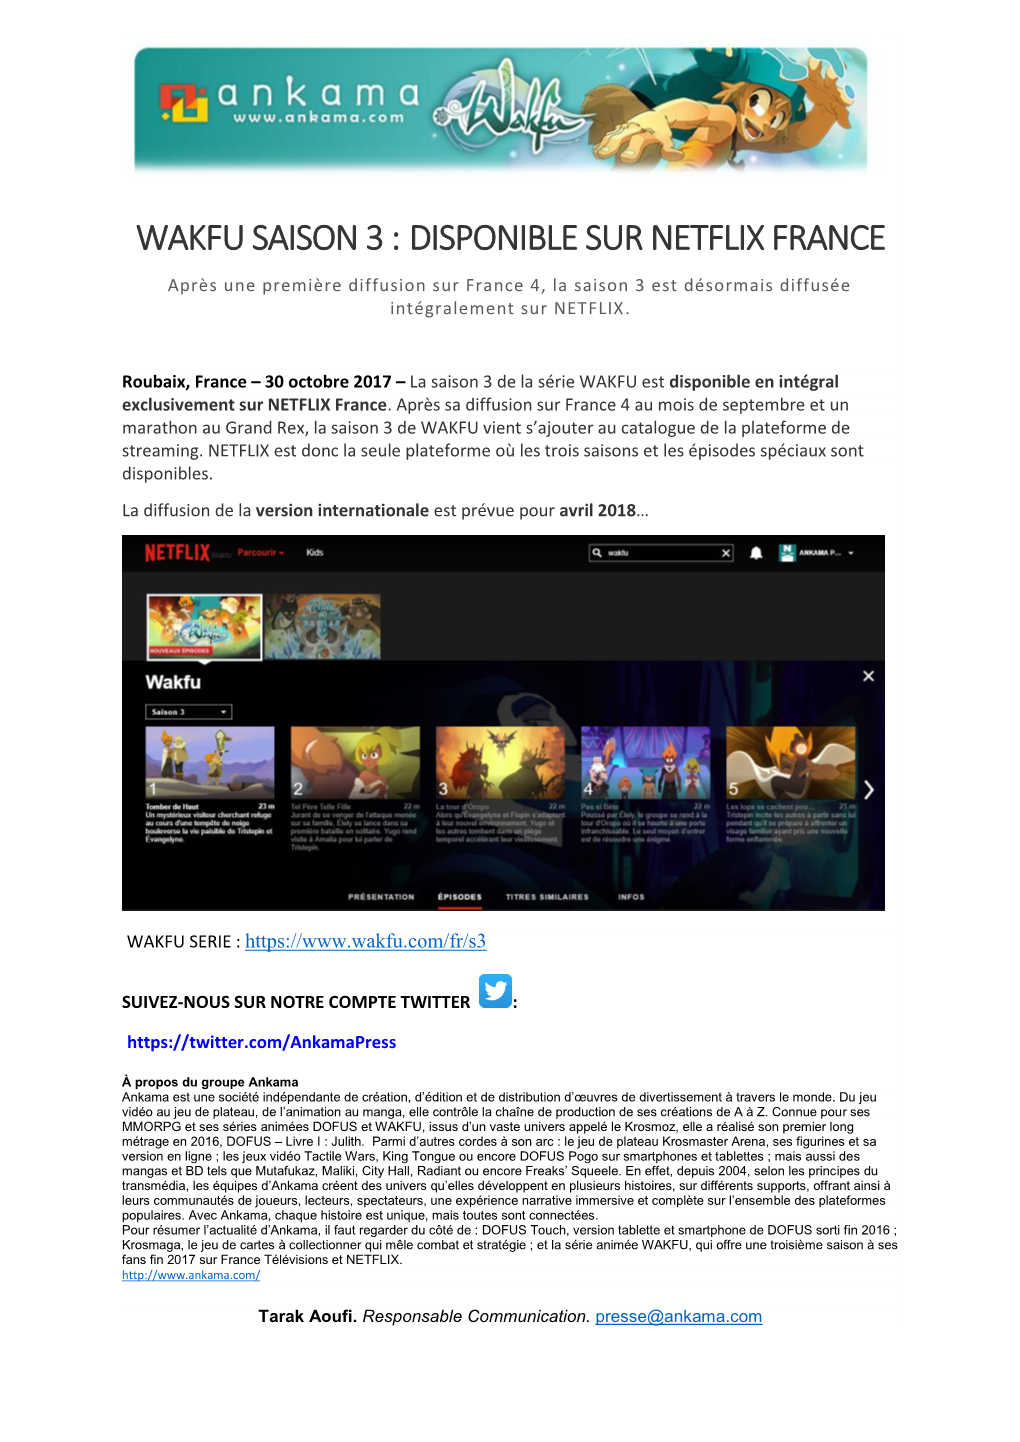 WAKFU SAISON 3 : DISPONIBLE SUR NETFLIX FRANCE Après Une Première Diffusion Sur France 4, La Saison 3 Est Désormais Diffusée Intégralement Sur NETFLIX